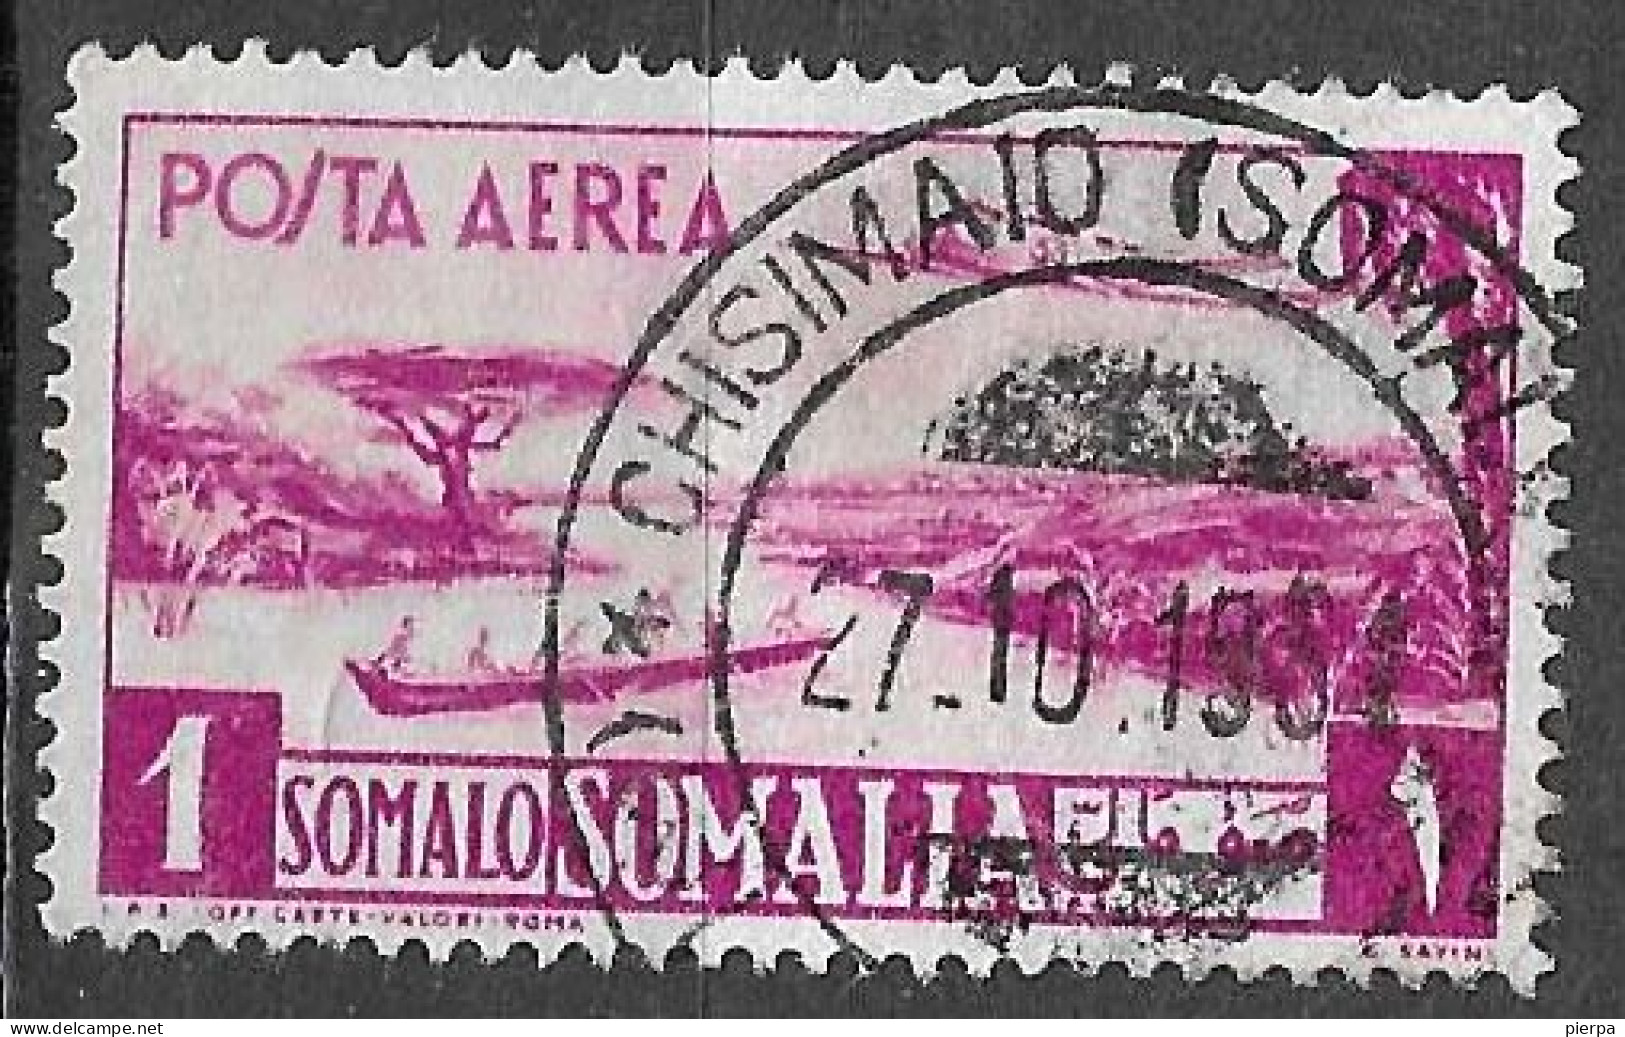 SOMALIA A.F.I.S. - 1950 - POSTA AEREA - 1 SOMALI - USATO (YVERT AV 35 - MICHEL 260 - SS A 6) - Somalia (AFIS)